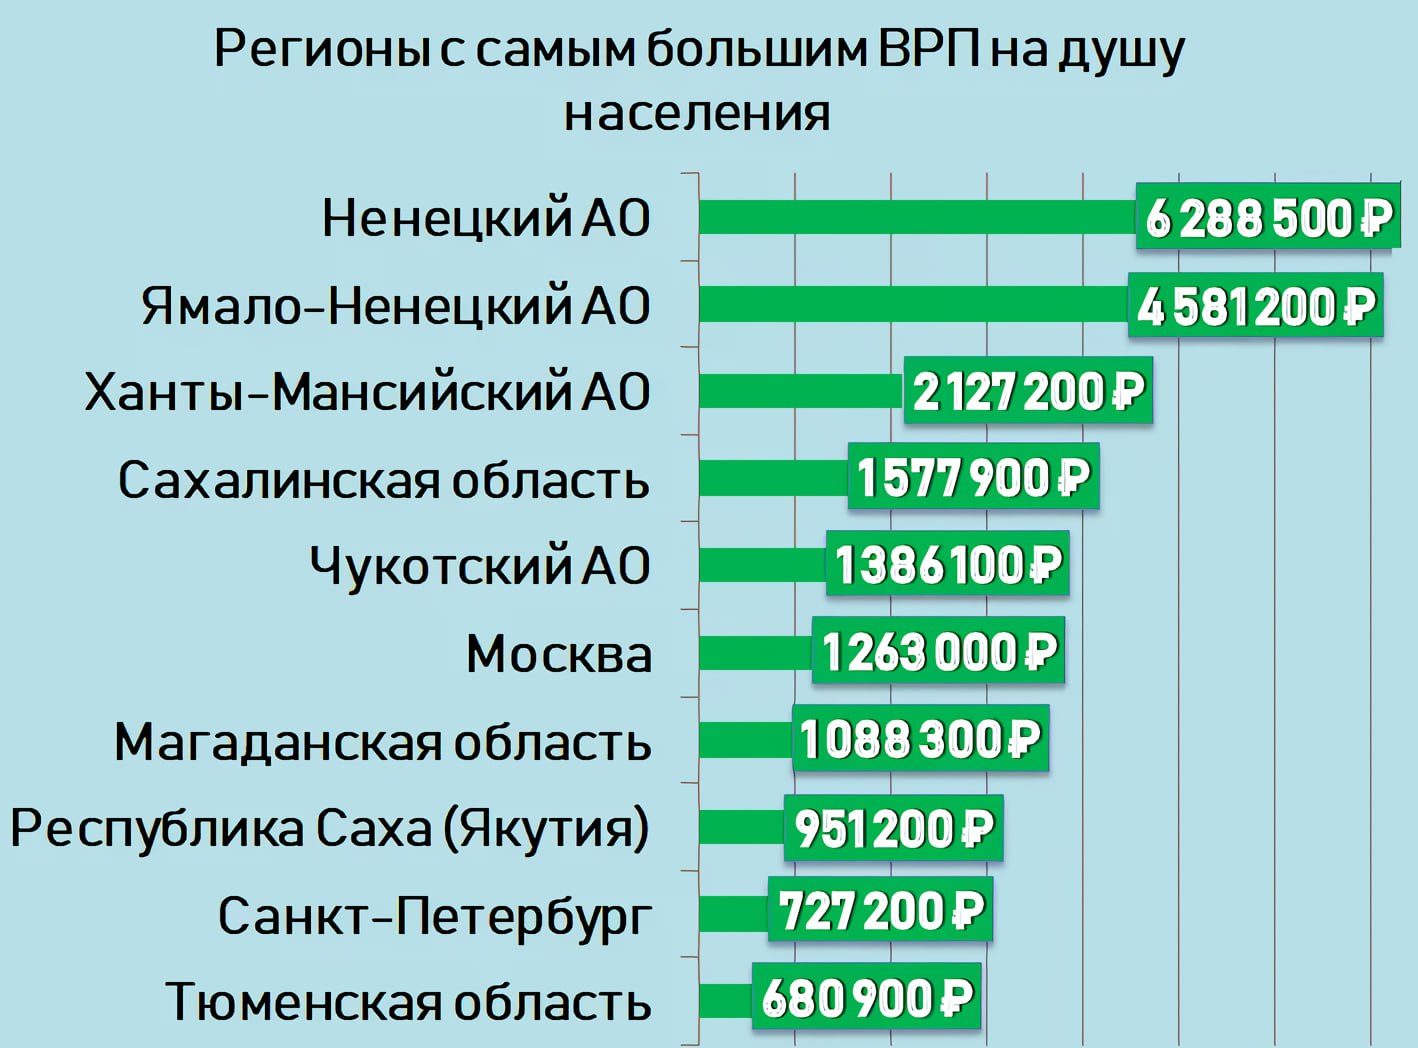 Самые богатые области России